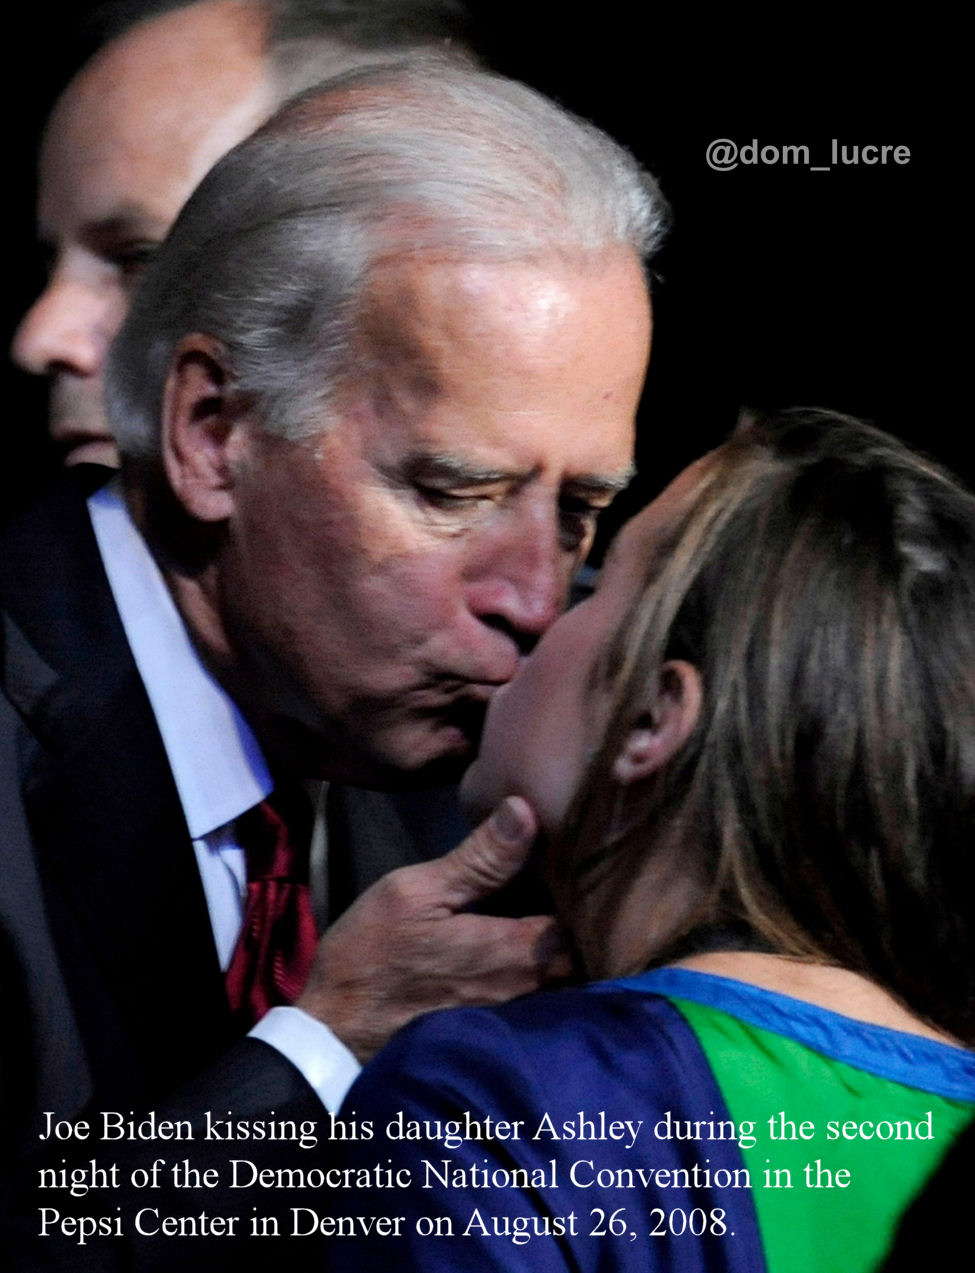 Joe Biden, the Child Abuser in Chief